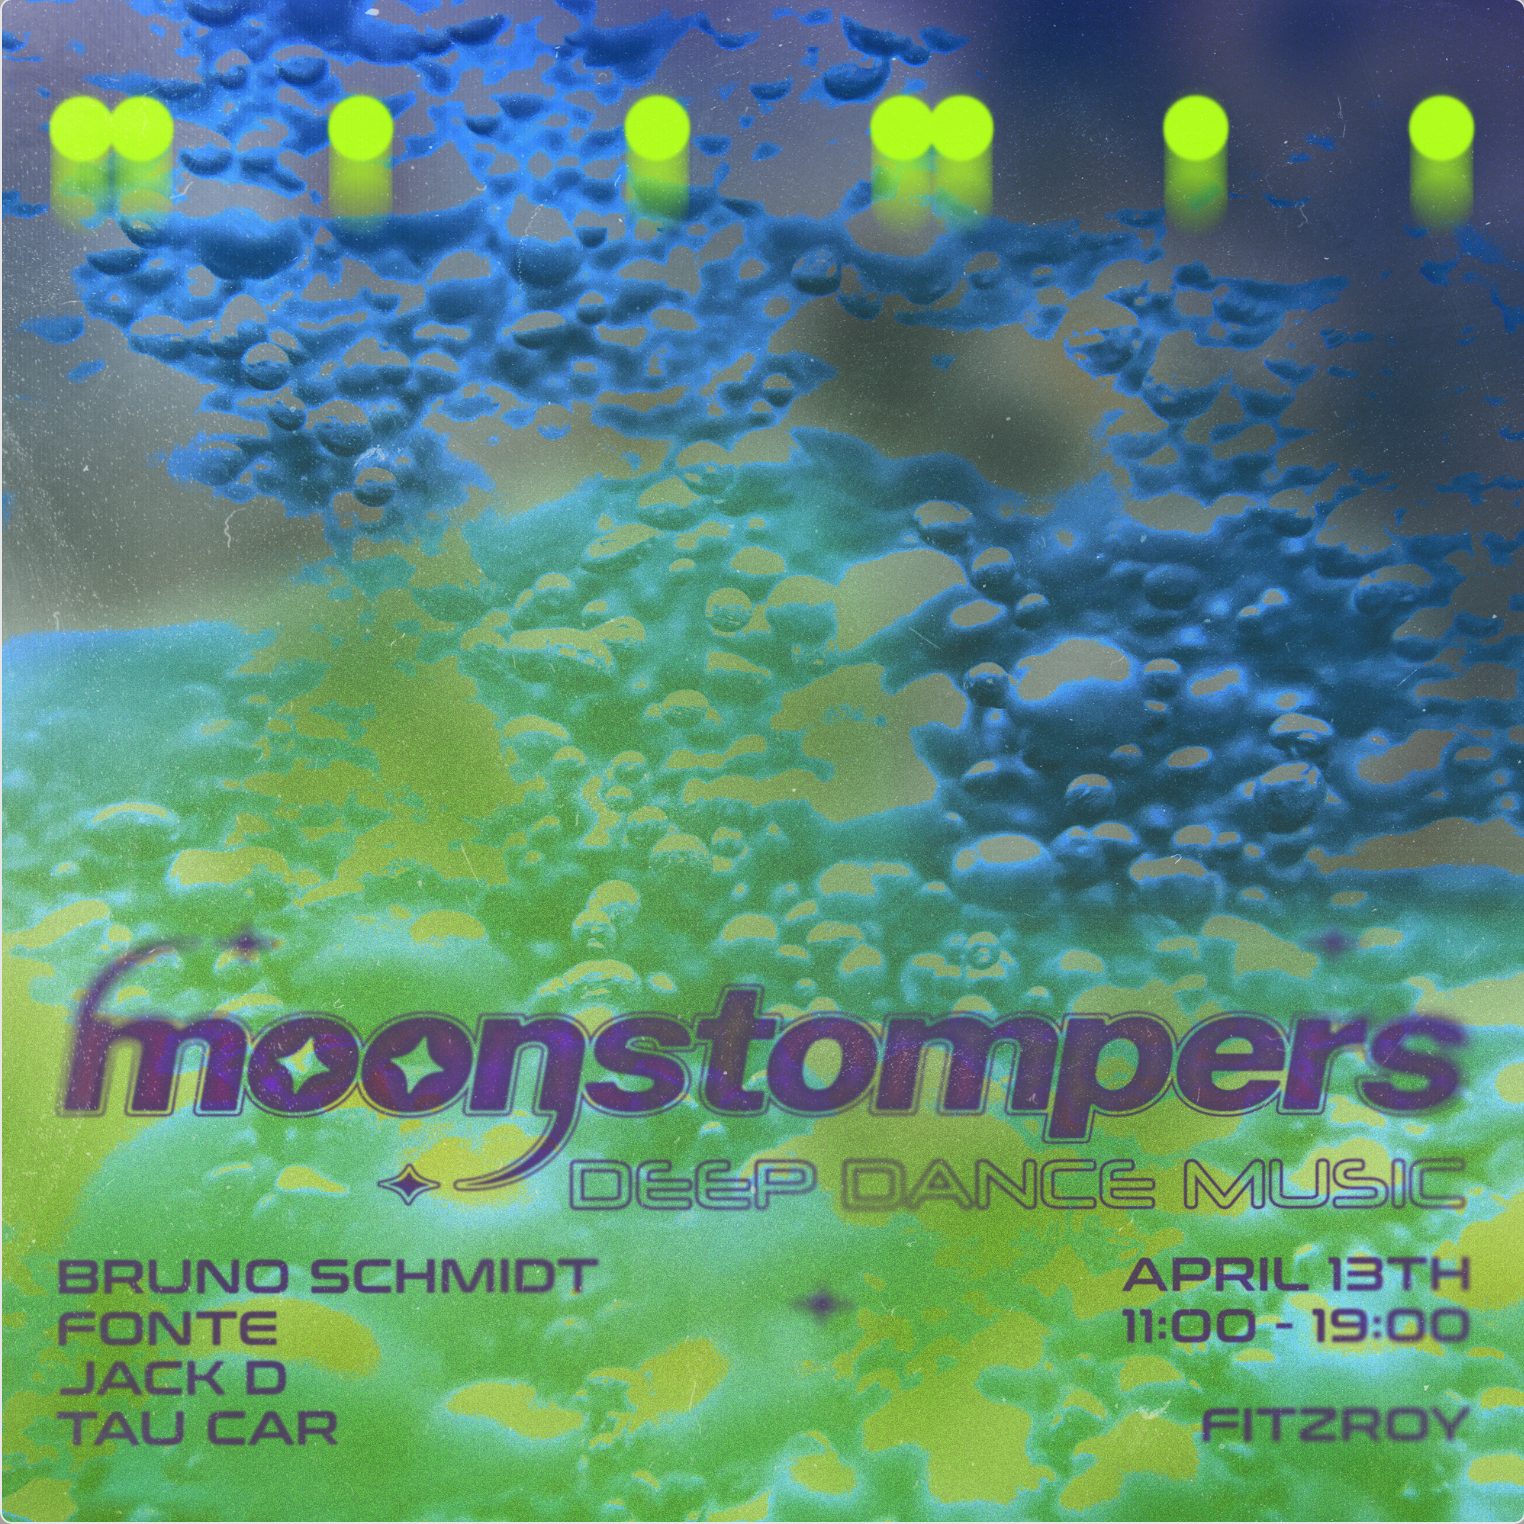 Moonstompers: Bruno Schmidt, Fonte, Tau Car, Jack D - Página frontal